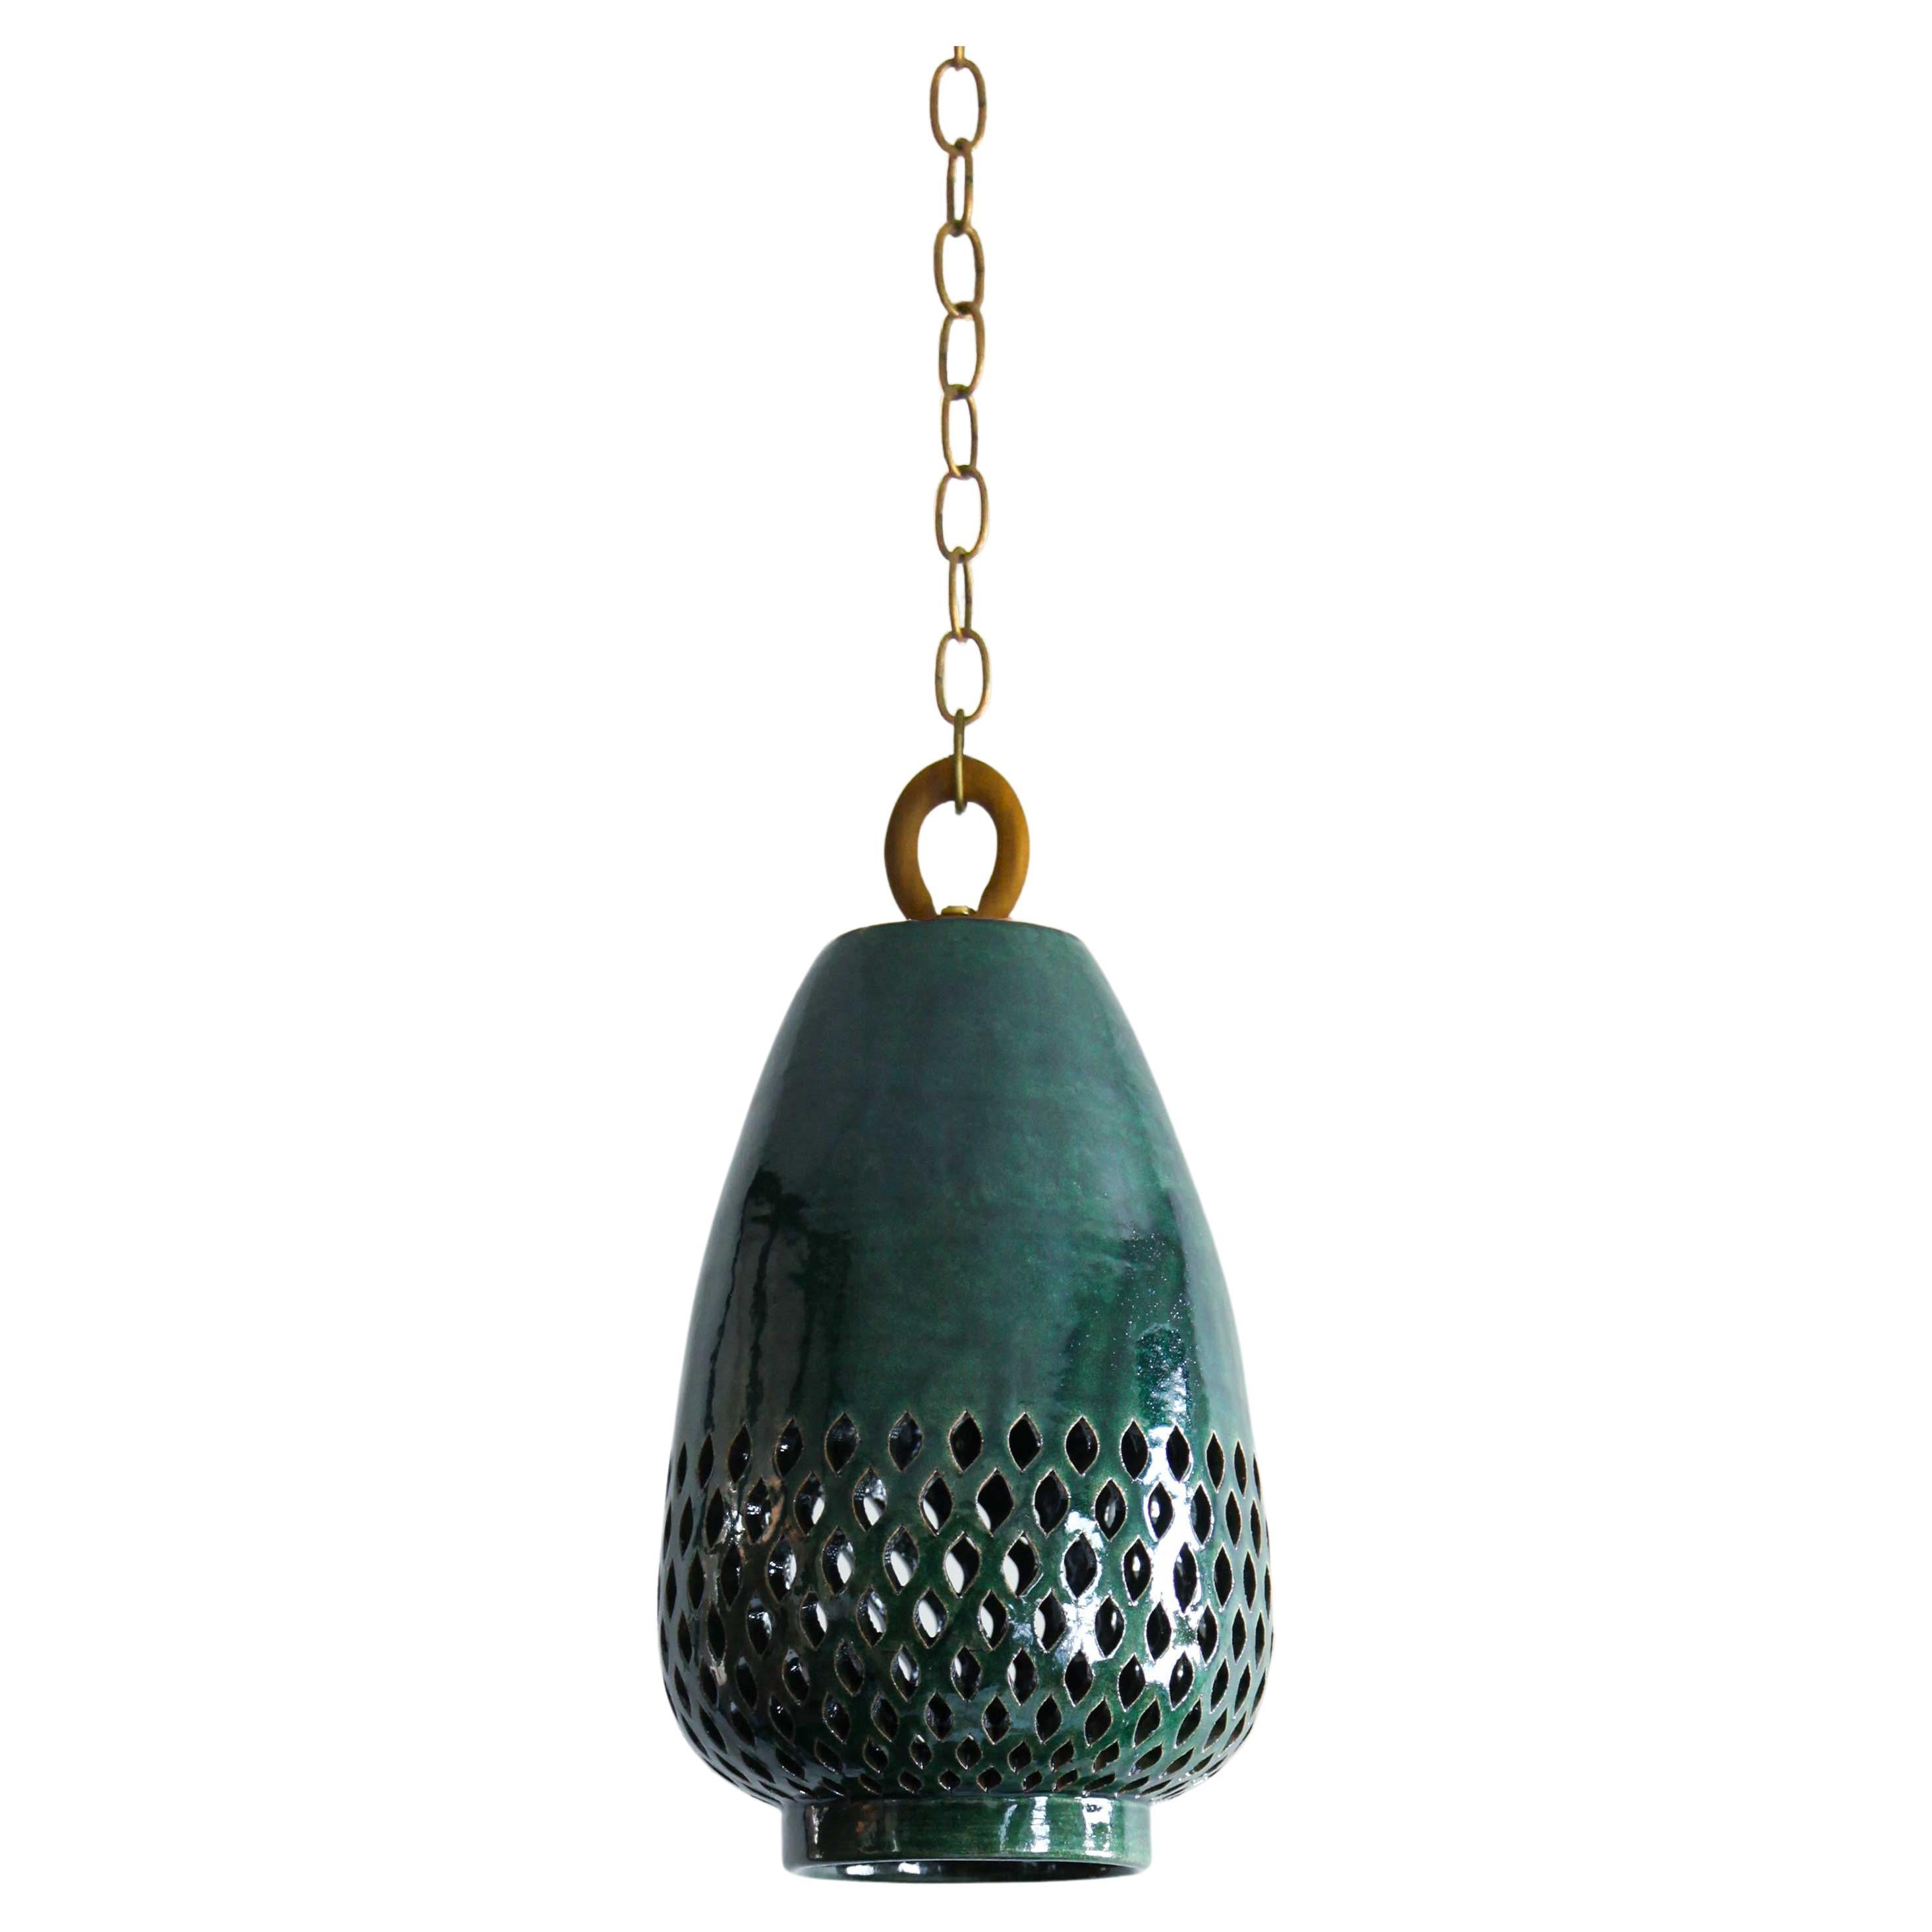 Petite lampe à suspension en céramique émeraude, laiton brossé, diamants, collection Atzompa